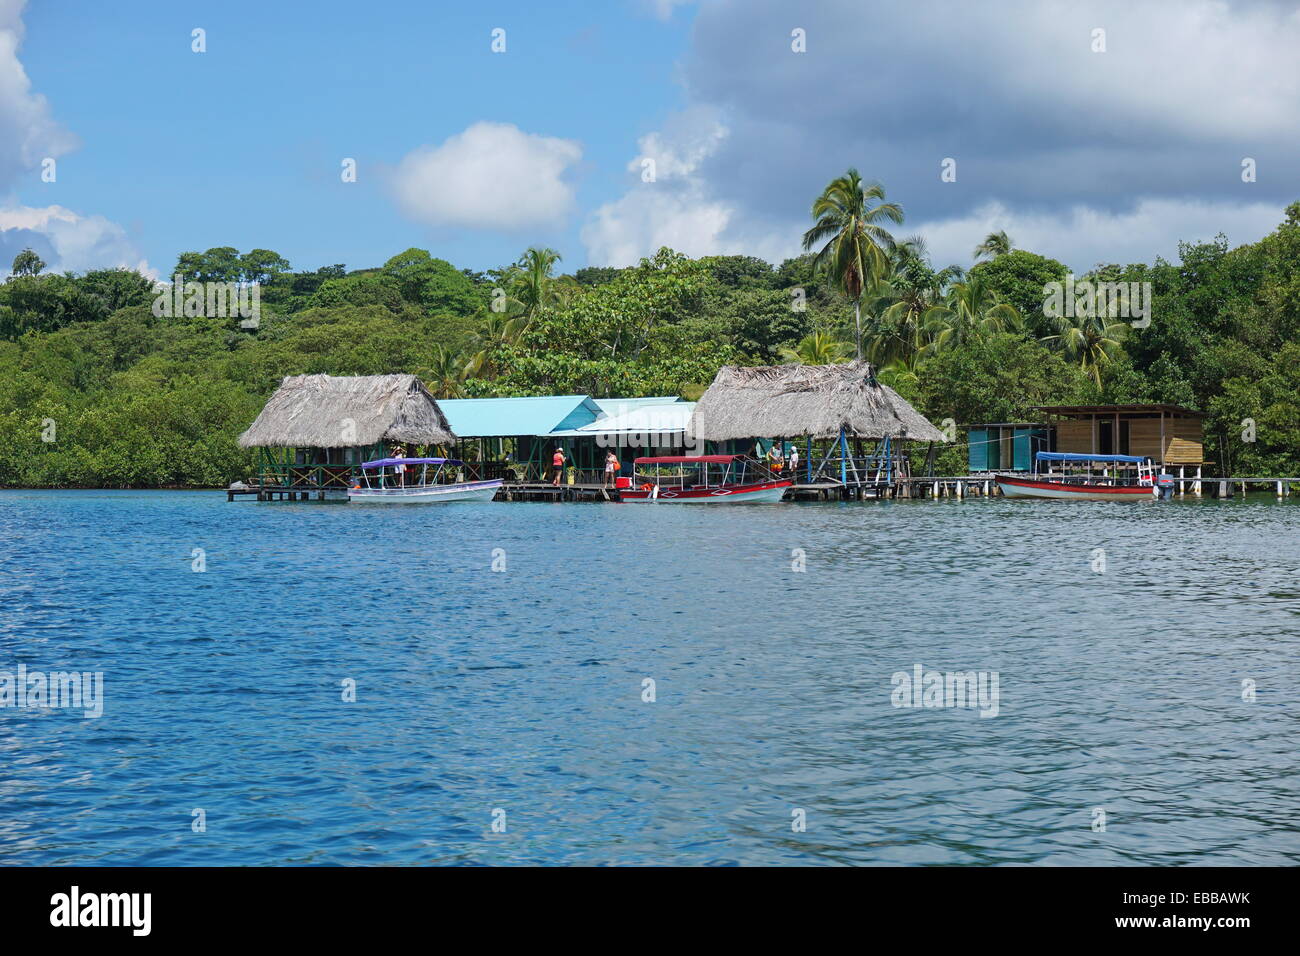 Tropical ristorante sul mare con imbarcazioni al dock e lussureggiante vegetazione, Caraibi, Bocas del Toro, America centrale e di Panama Foto Stock